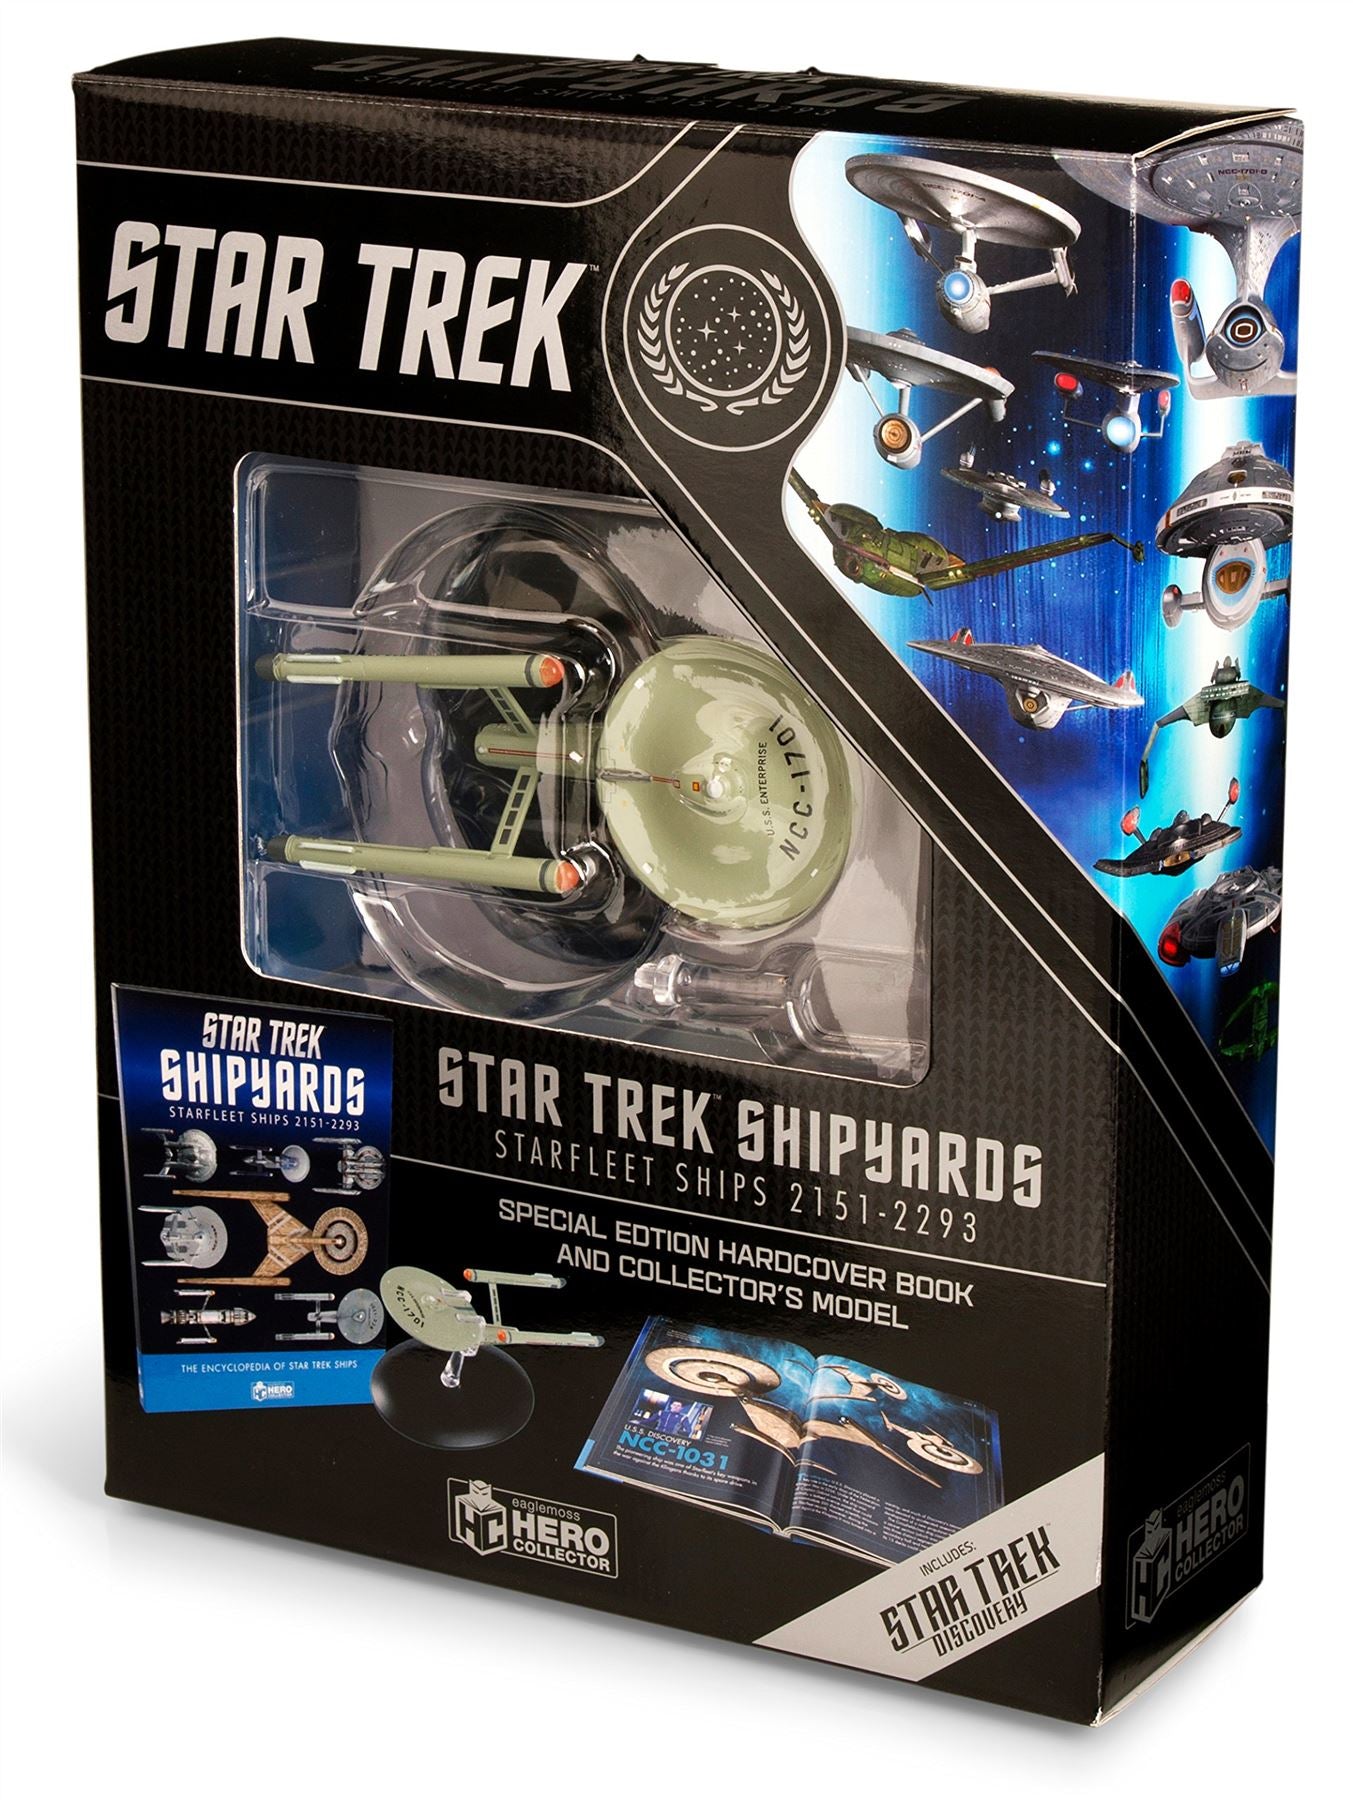 Star Trek Shipyards Starfleet Starships: 2151-2293 - Special Edition Hardcover Book and Collector's Model (Star Trek / Eaglemoss)